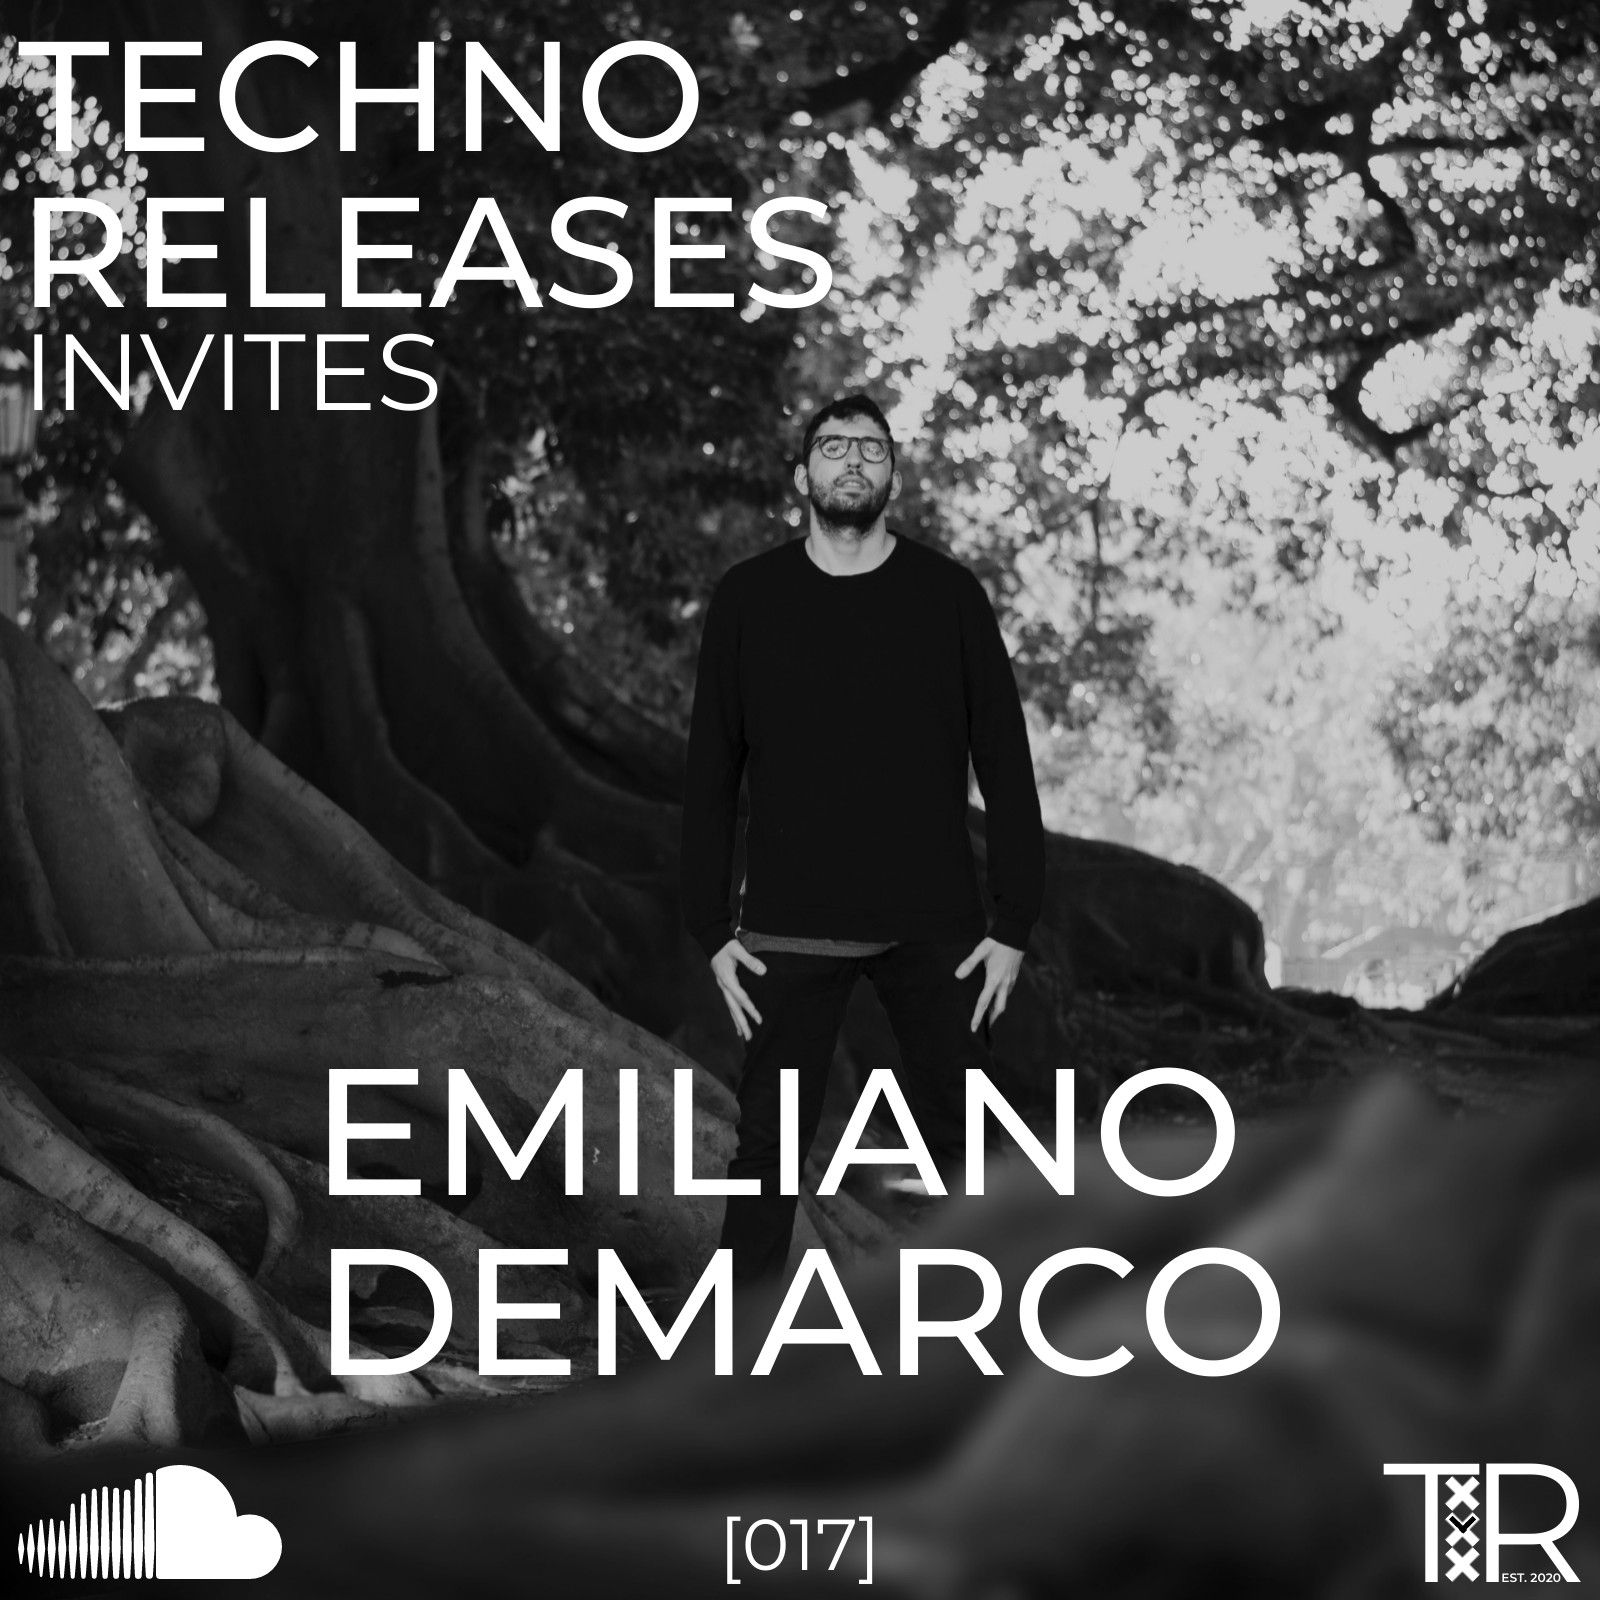 Budata Techno Releases Invites Emiliano Demarco - [017]